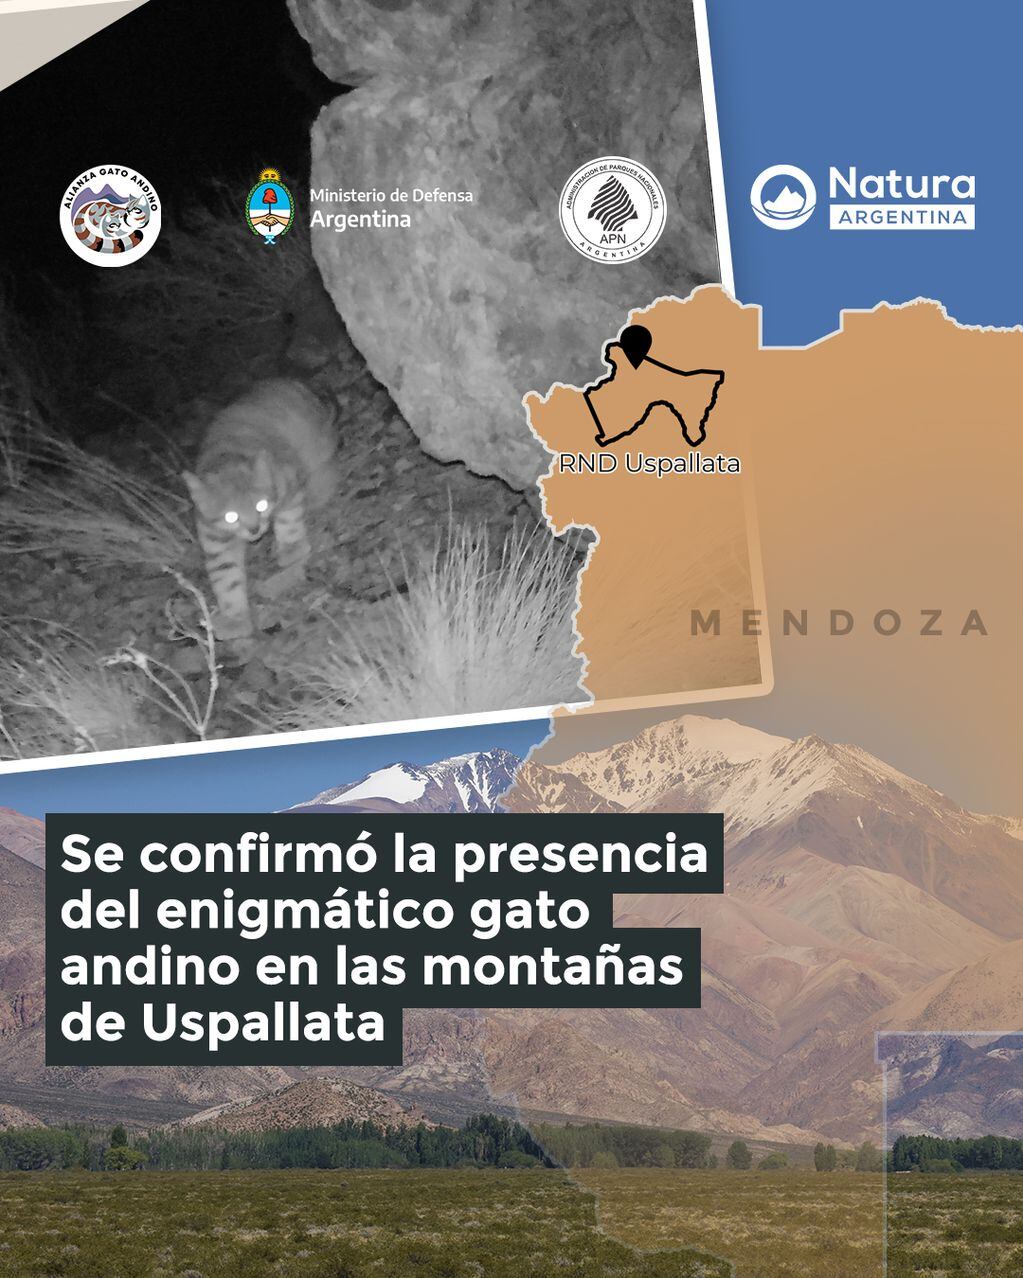 “El fantasma de los Andes”: filmaron a un ejemplar de gato andino en Uspallata, un misterioso ejemplar de la fauna cordillerana. Foto: Gentileza.